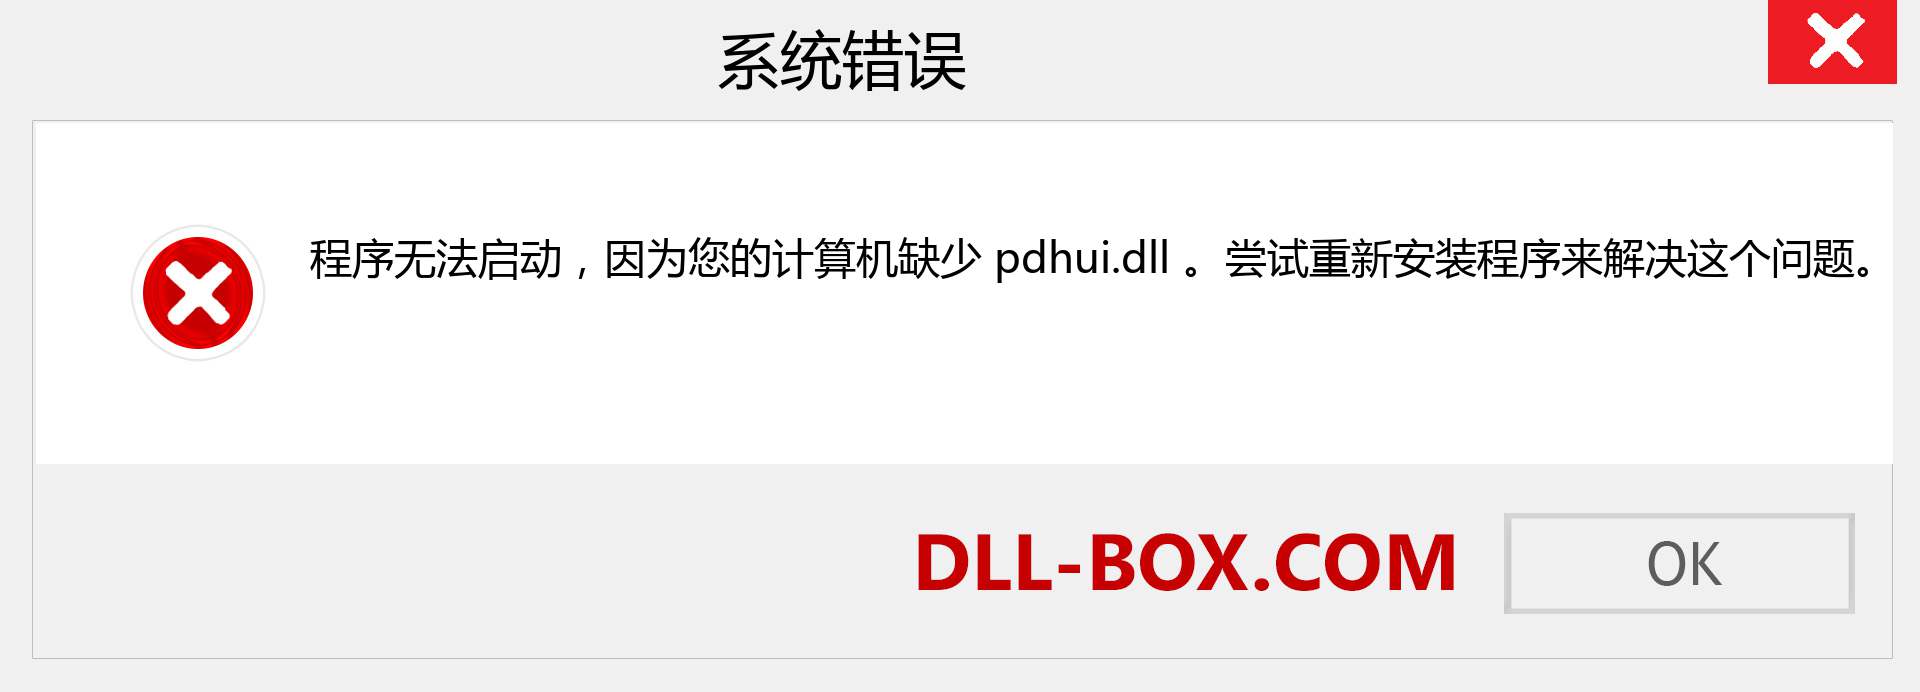 pdhui.dll 文件丢失？。 适用于 Windows 7、8、10 的下载 - 修复 Windows、照片、图像上的 pdhui dll 丢失错误